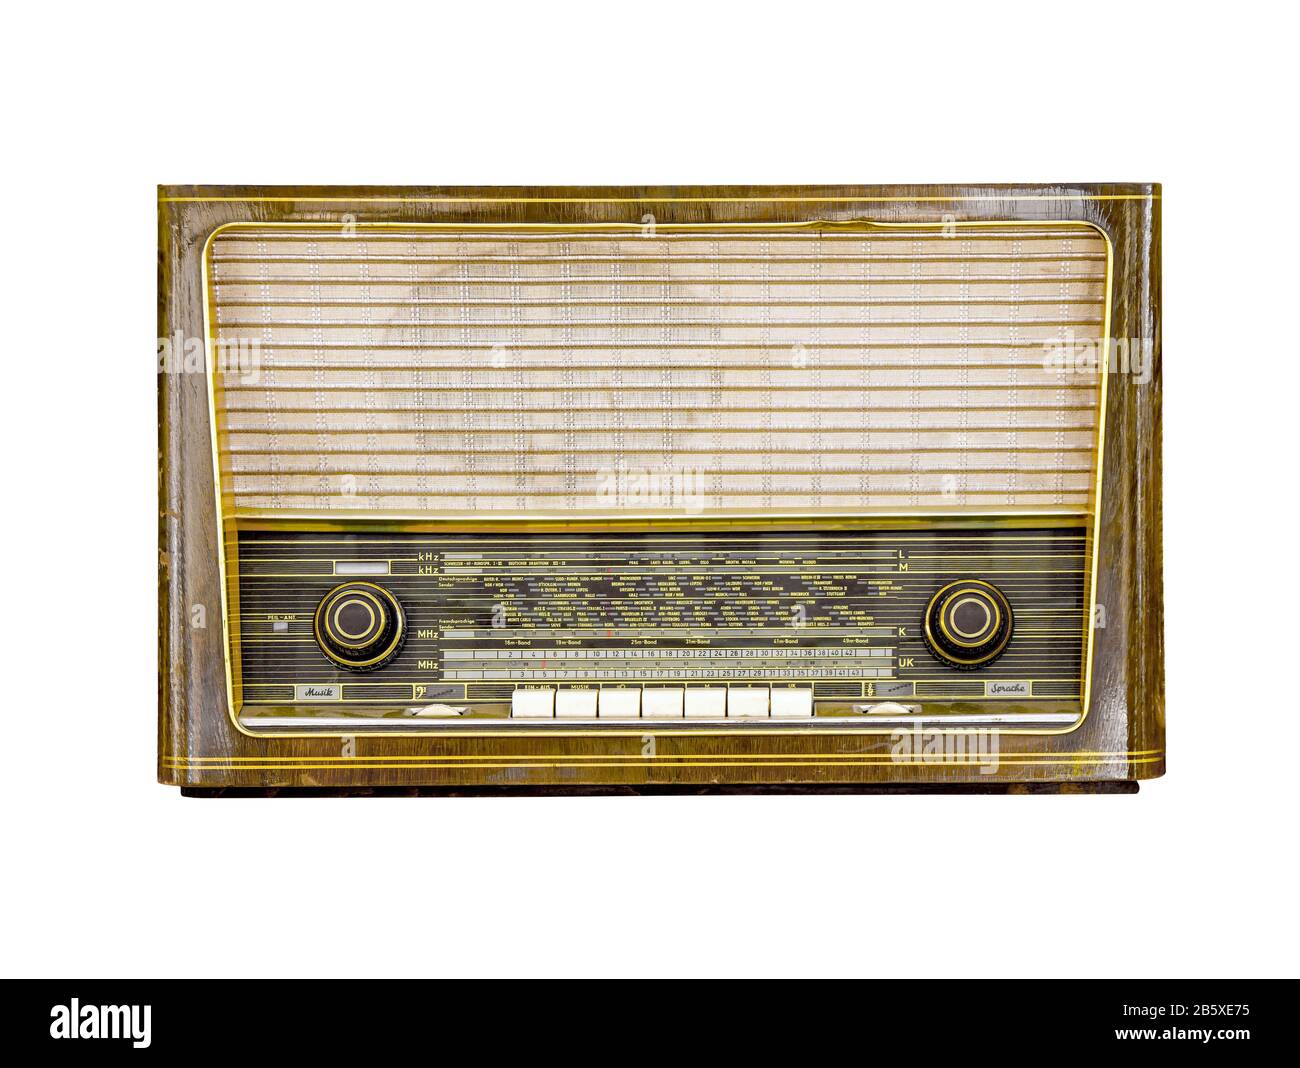 Vintage radio isolated on white background, retro analog radio technology  Stock Photo - Alamy